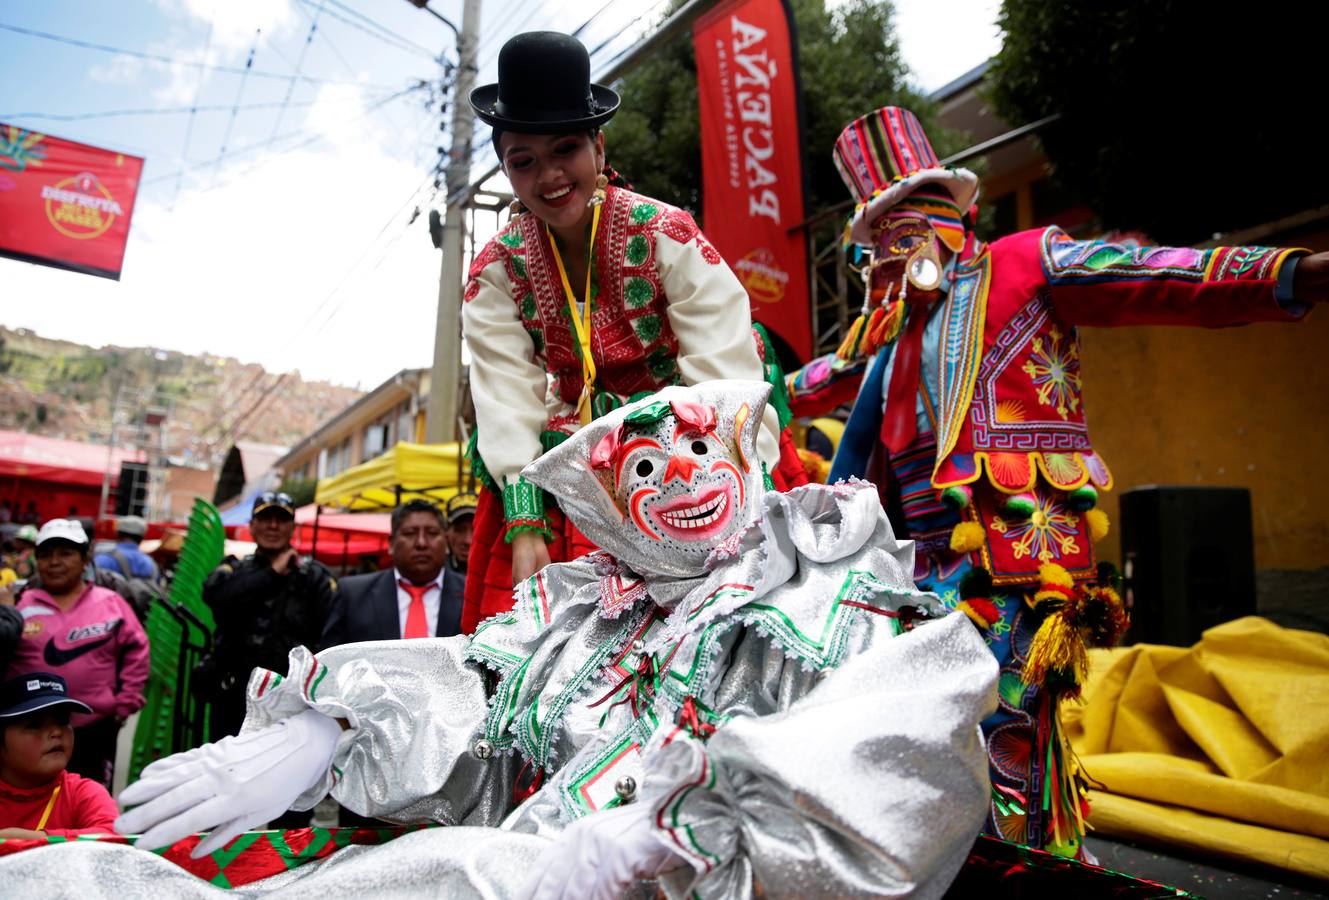 El personaje carnavalesco «El Pepino» saluda durante su tradicional desentierro, que da inicio a las festividades del carnaval de La Paz (Bolivia).